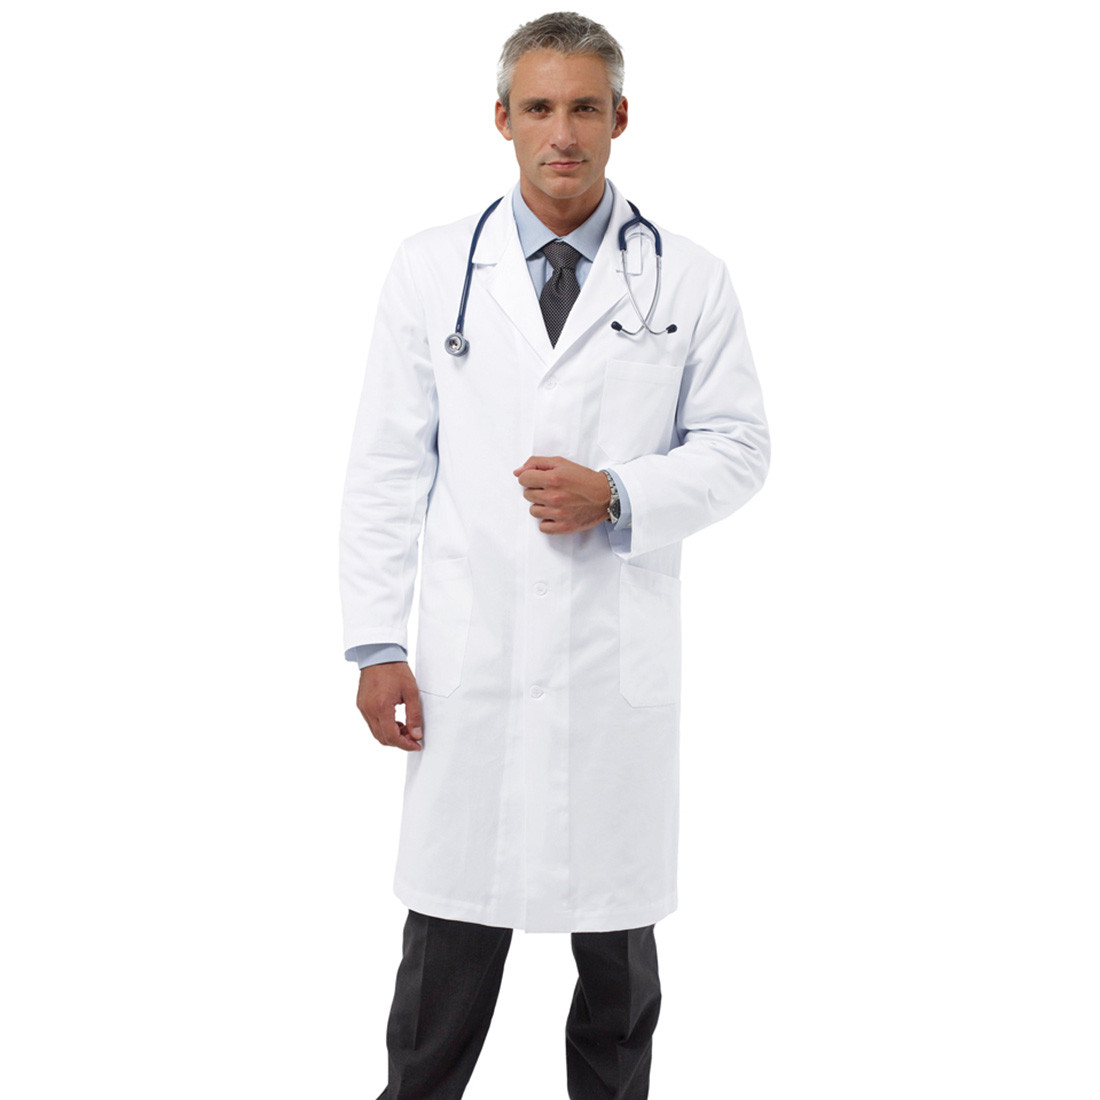 Blouse médical BLUMMER - Les vêtements de protection